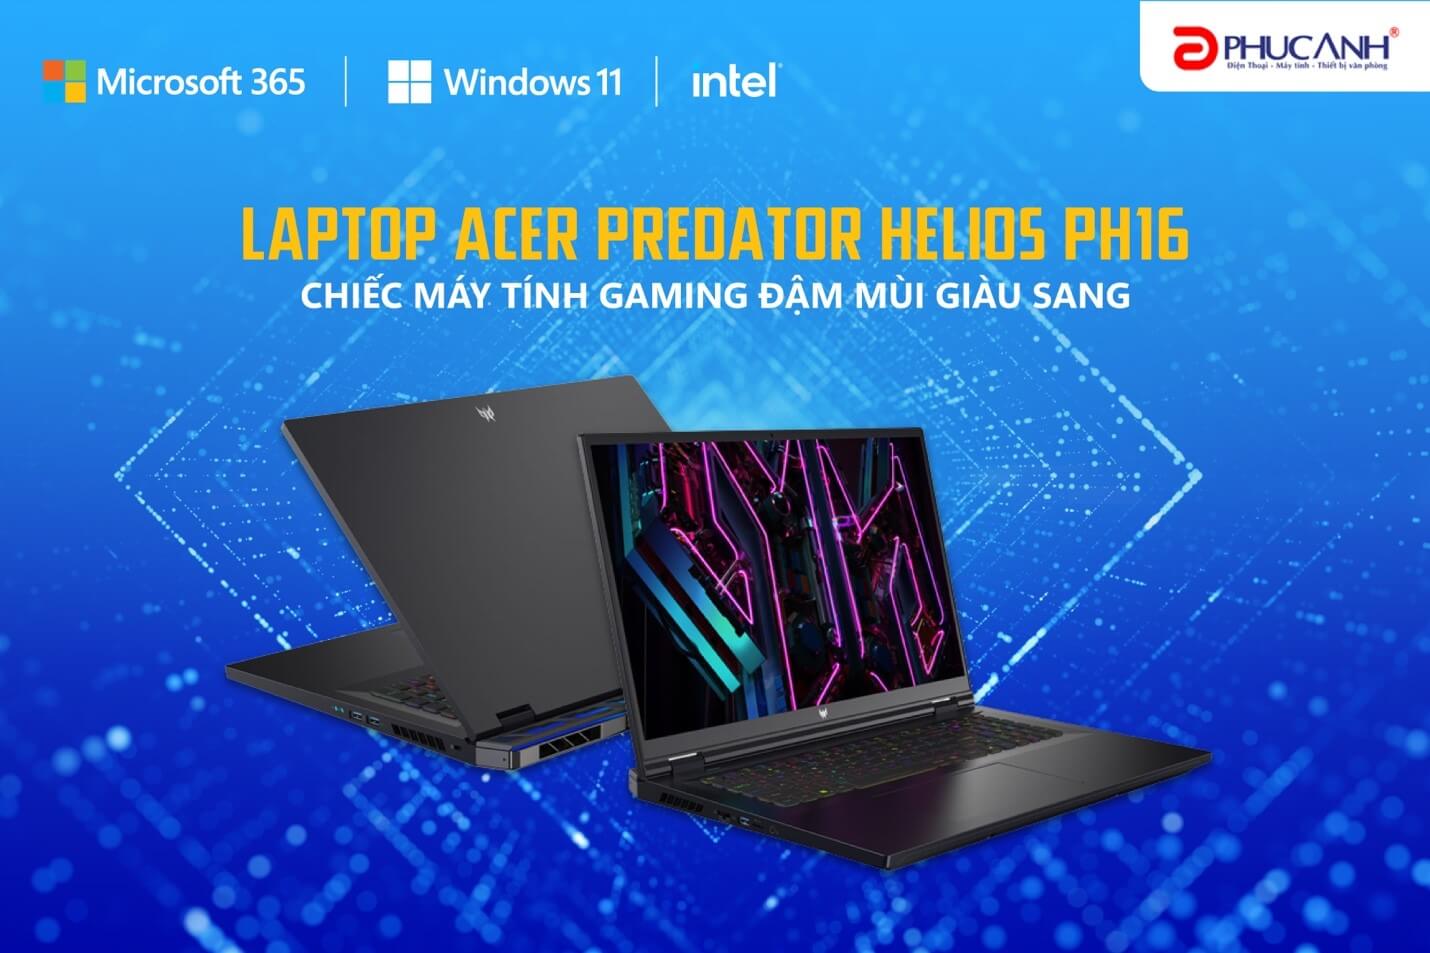 Laptop Acer Predator Helios PH16 - Chiếc máy tính gaming đậm mùi giàu sang